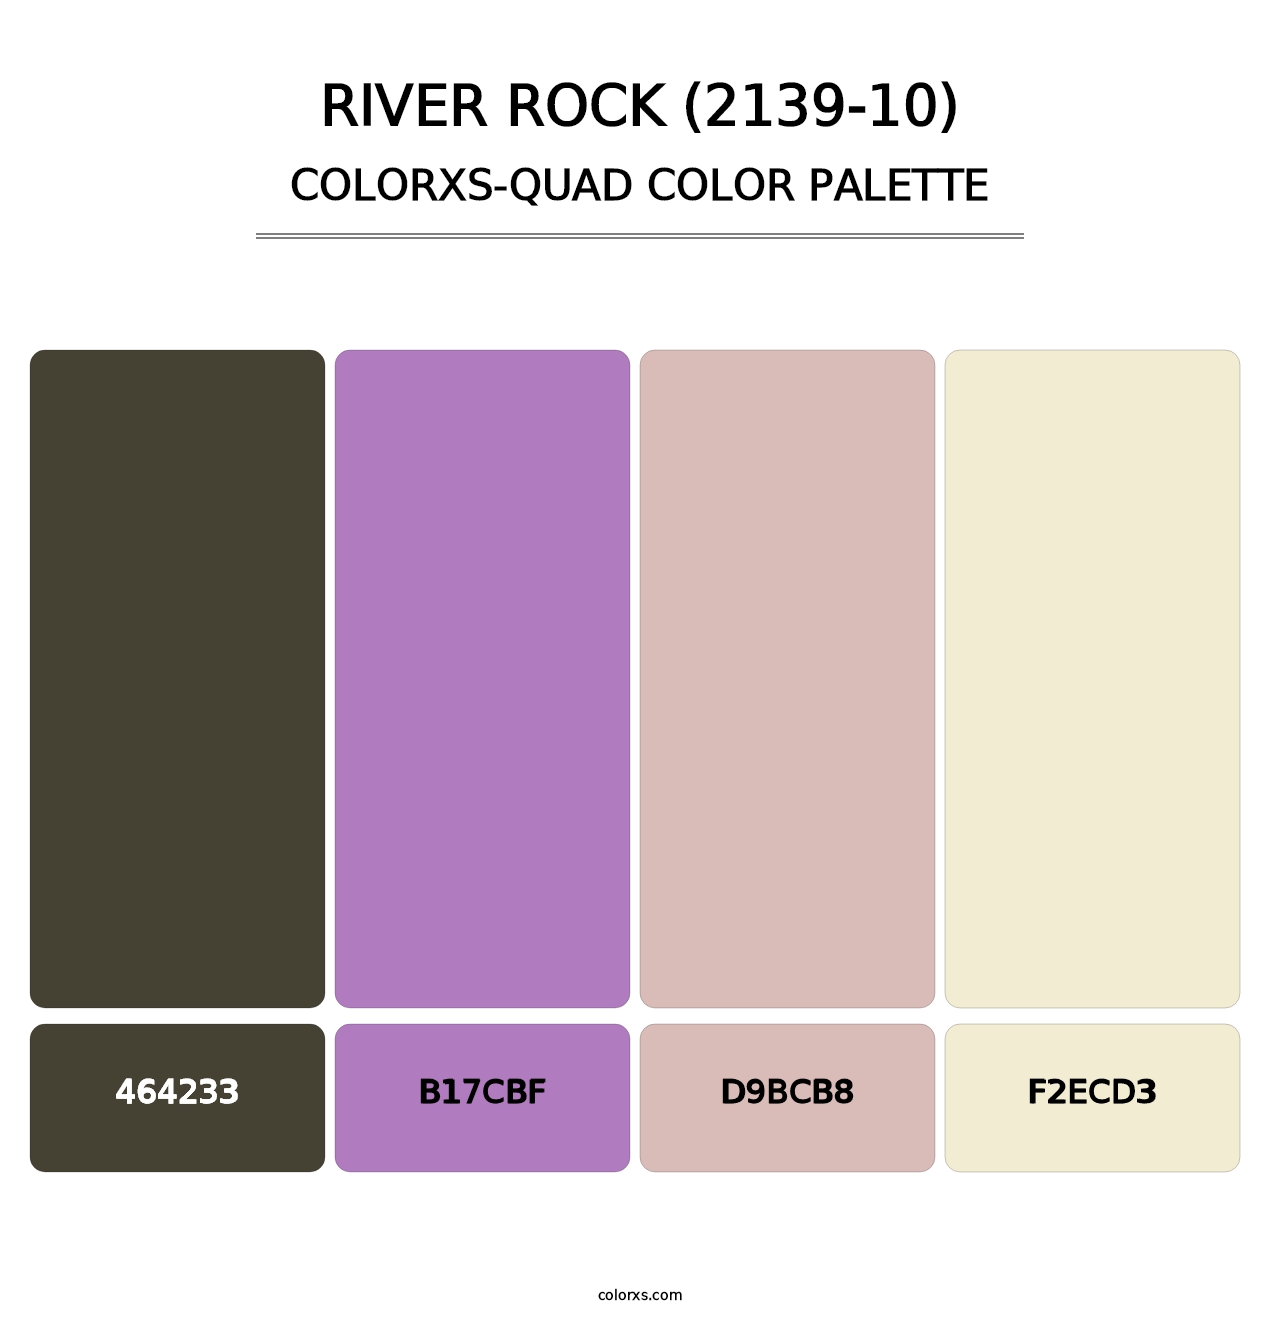 River Rock (2139-10) - Colorxs Quad Palette